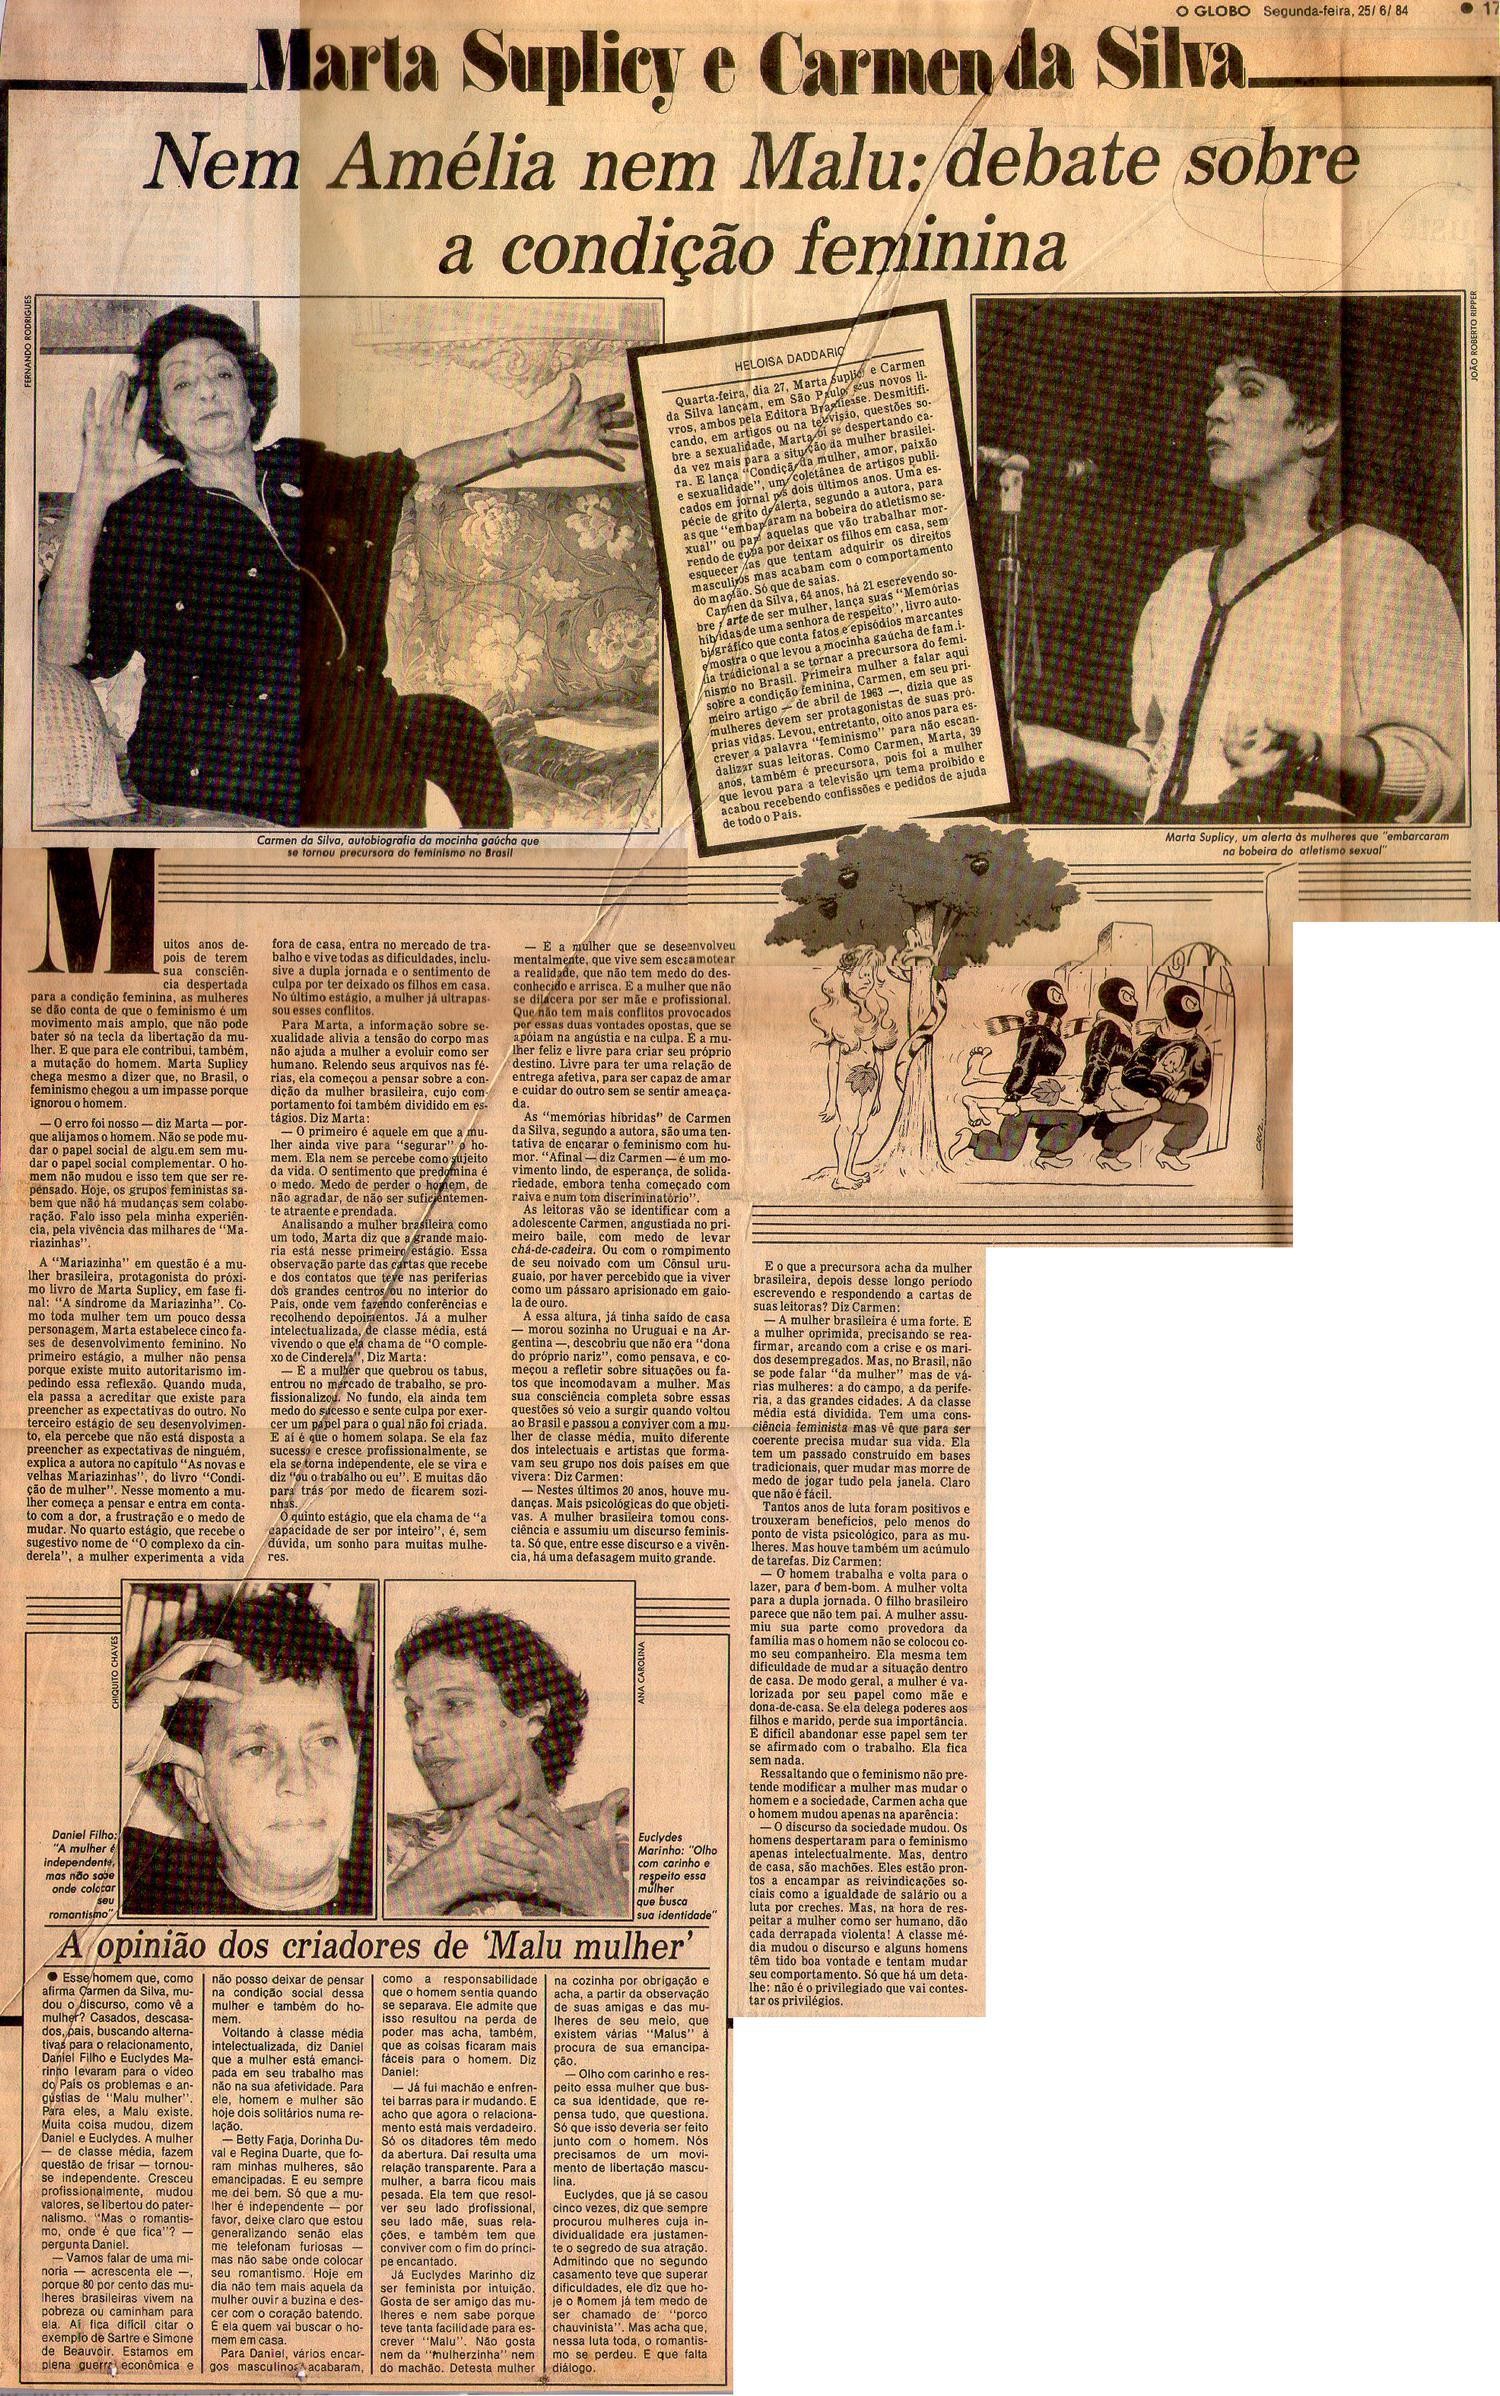 25 de Junho de 1984 - O Globo. Nem Amélia nem Malu: debate sobre a condição feminina.